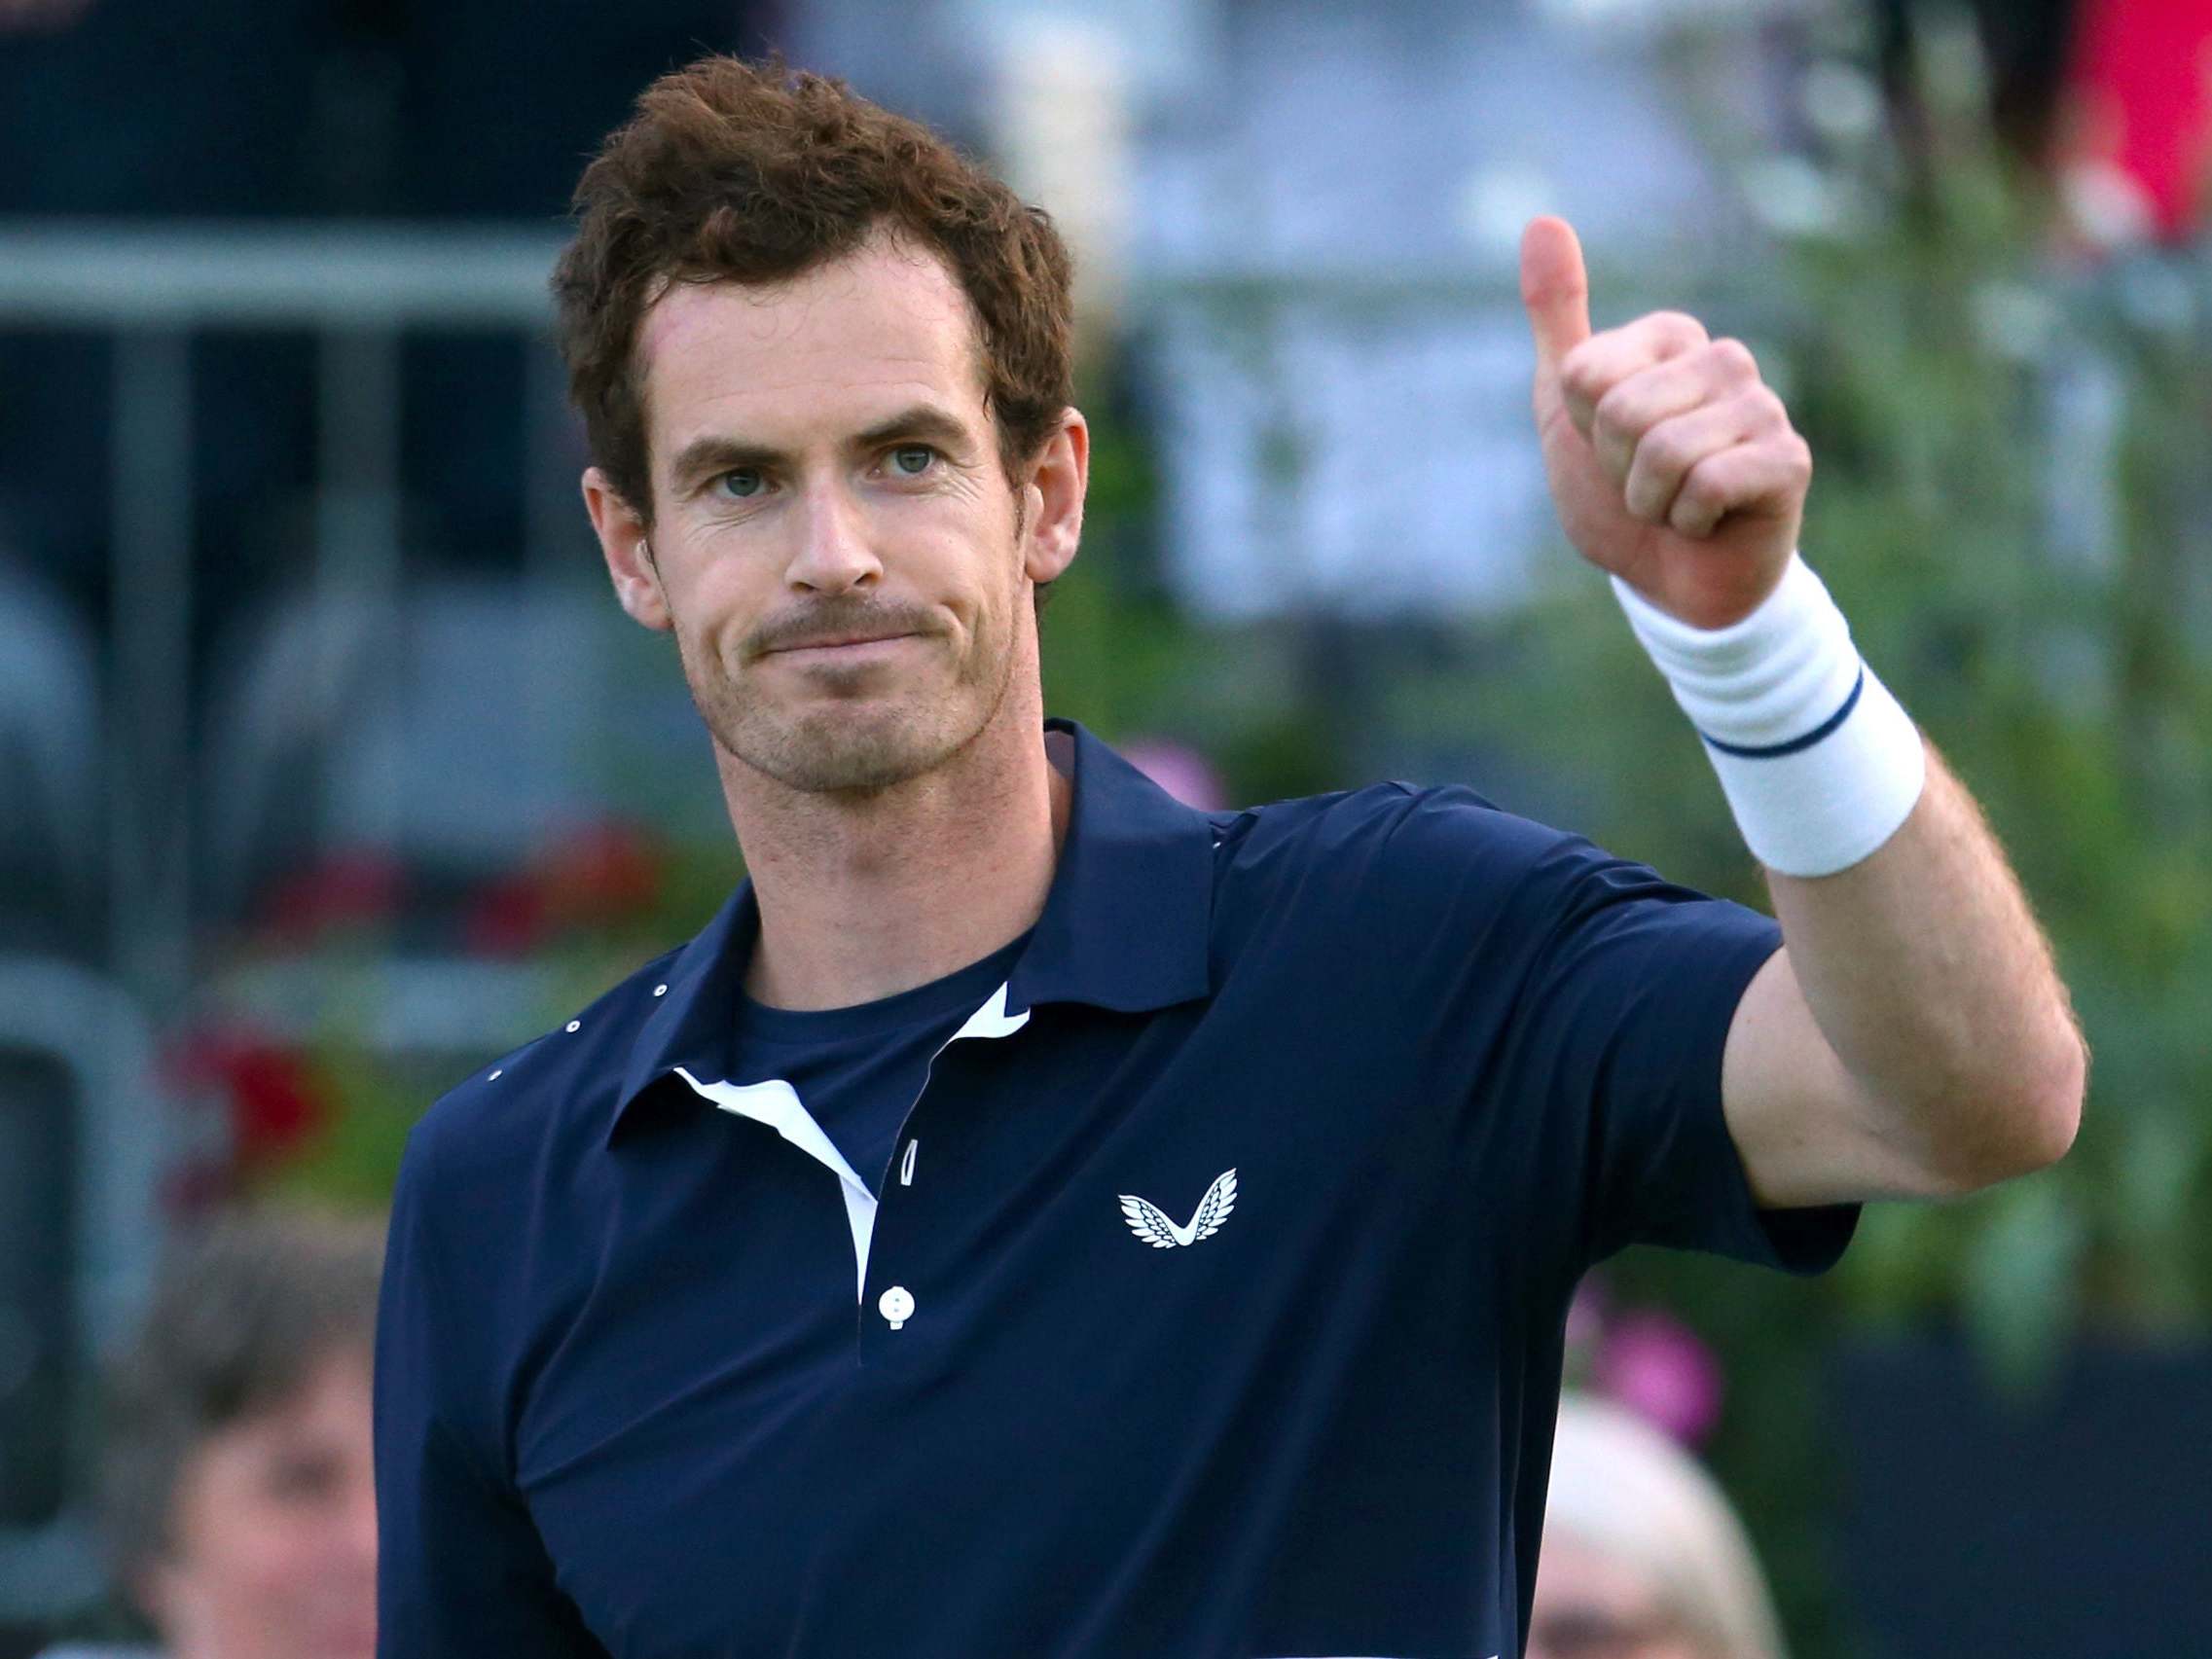 Reanudar tenis paralizado por la pandemia no es prioridad, dice Andy Murray